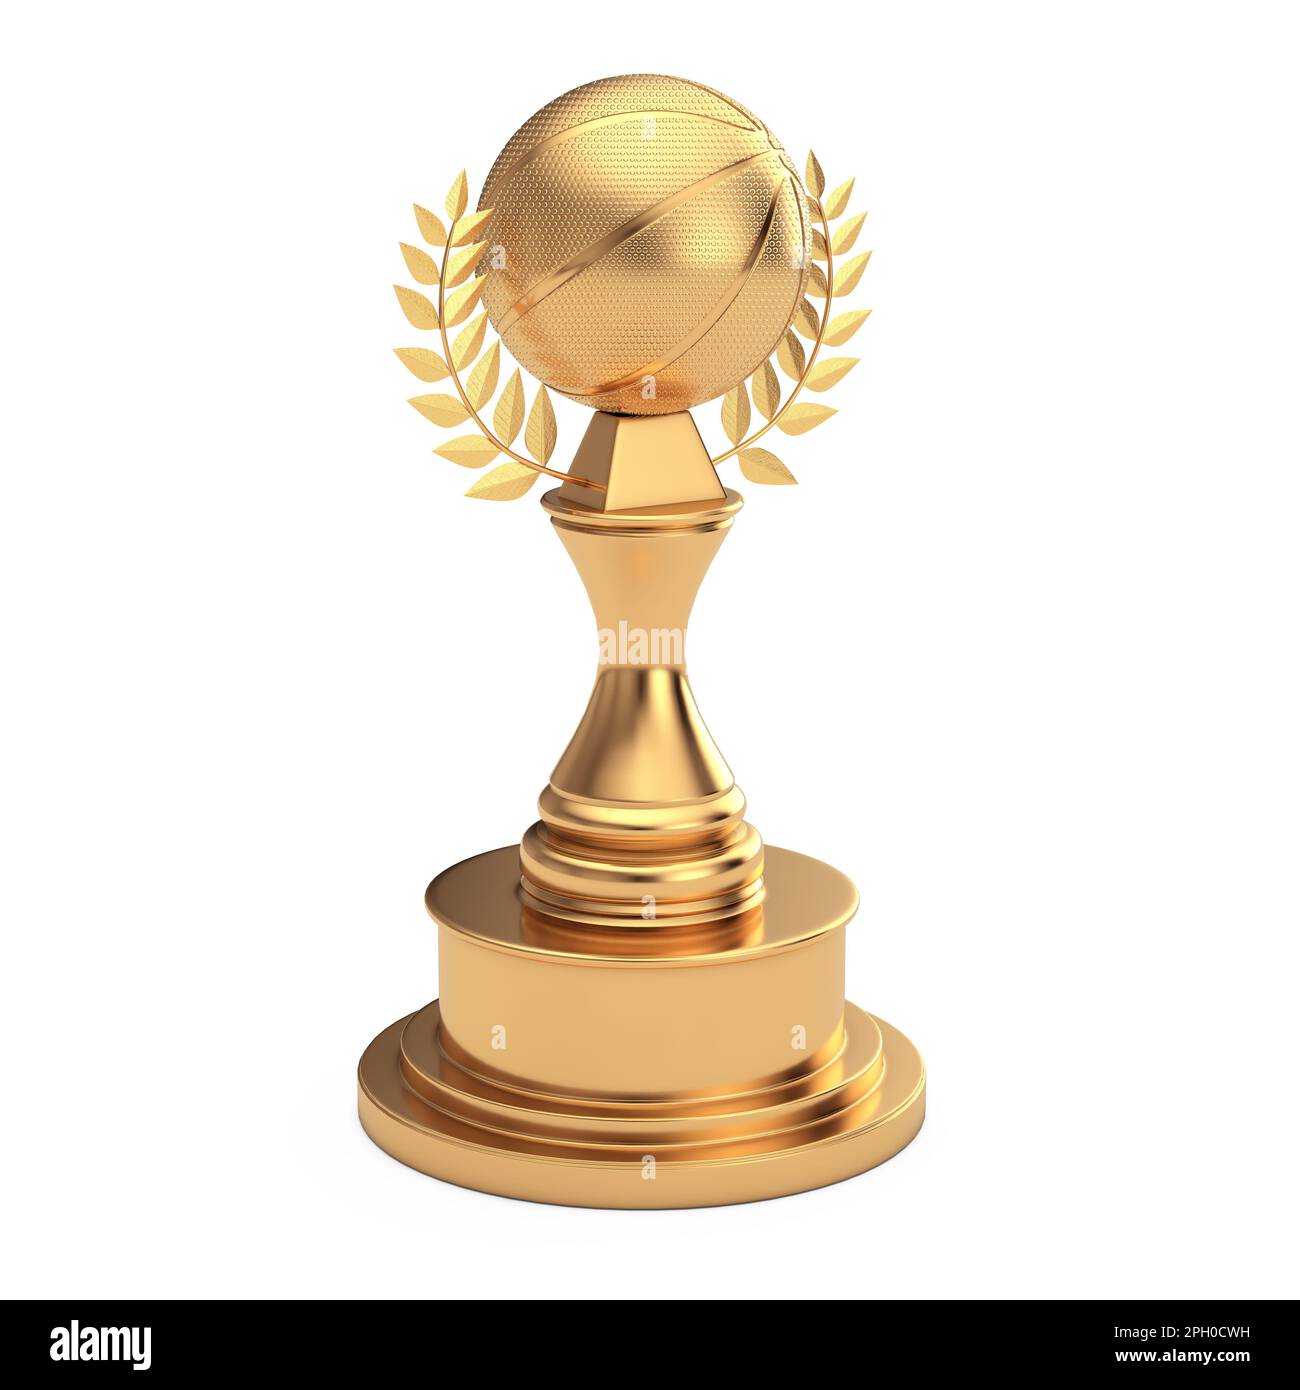 Premium Photo  Basketball award concept. golden award trophy